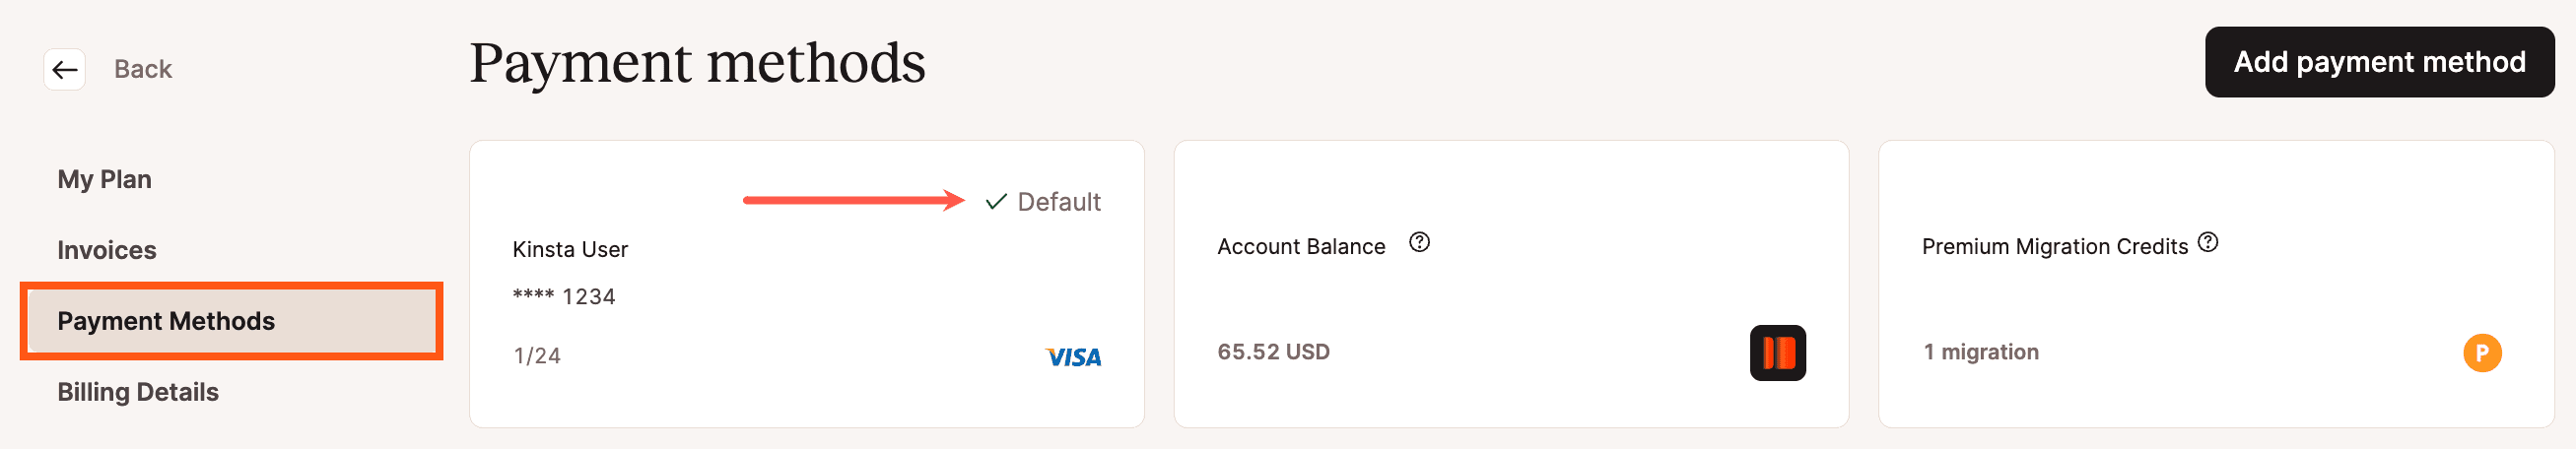 Una nueva tarjeta de crédito añadida en MyKinsta.